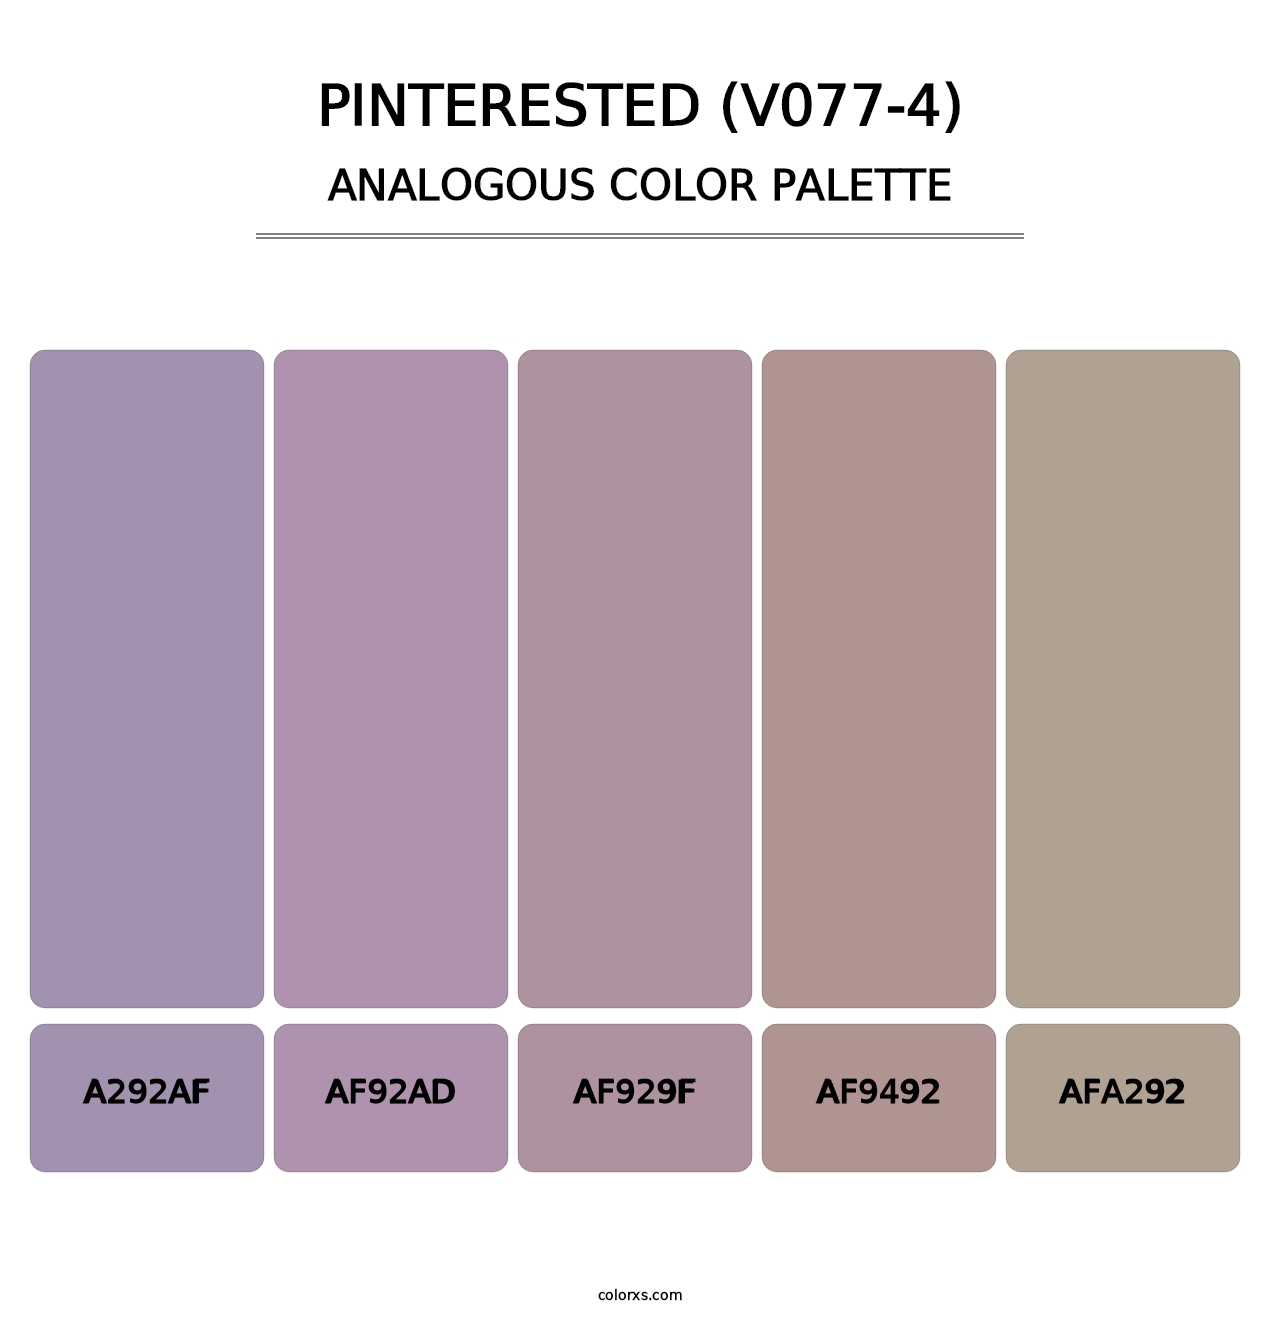 Pinterested (V077-4) - Analogous Color Palette